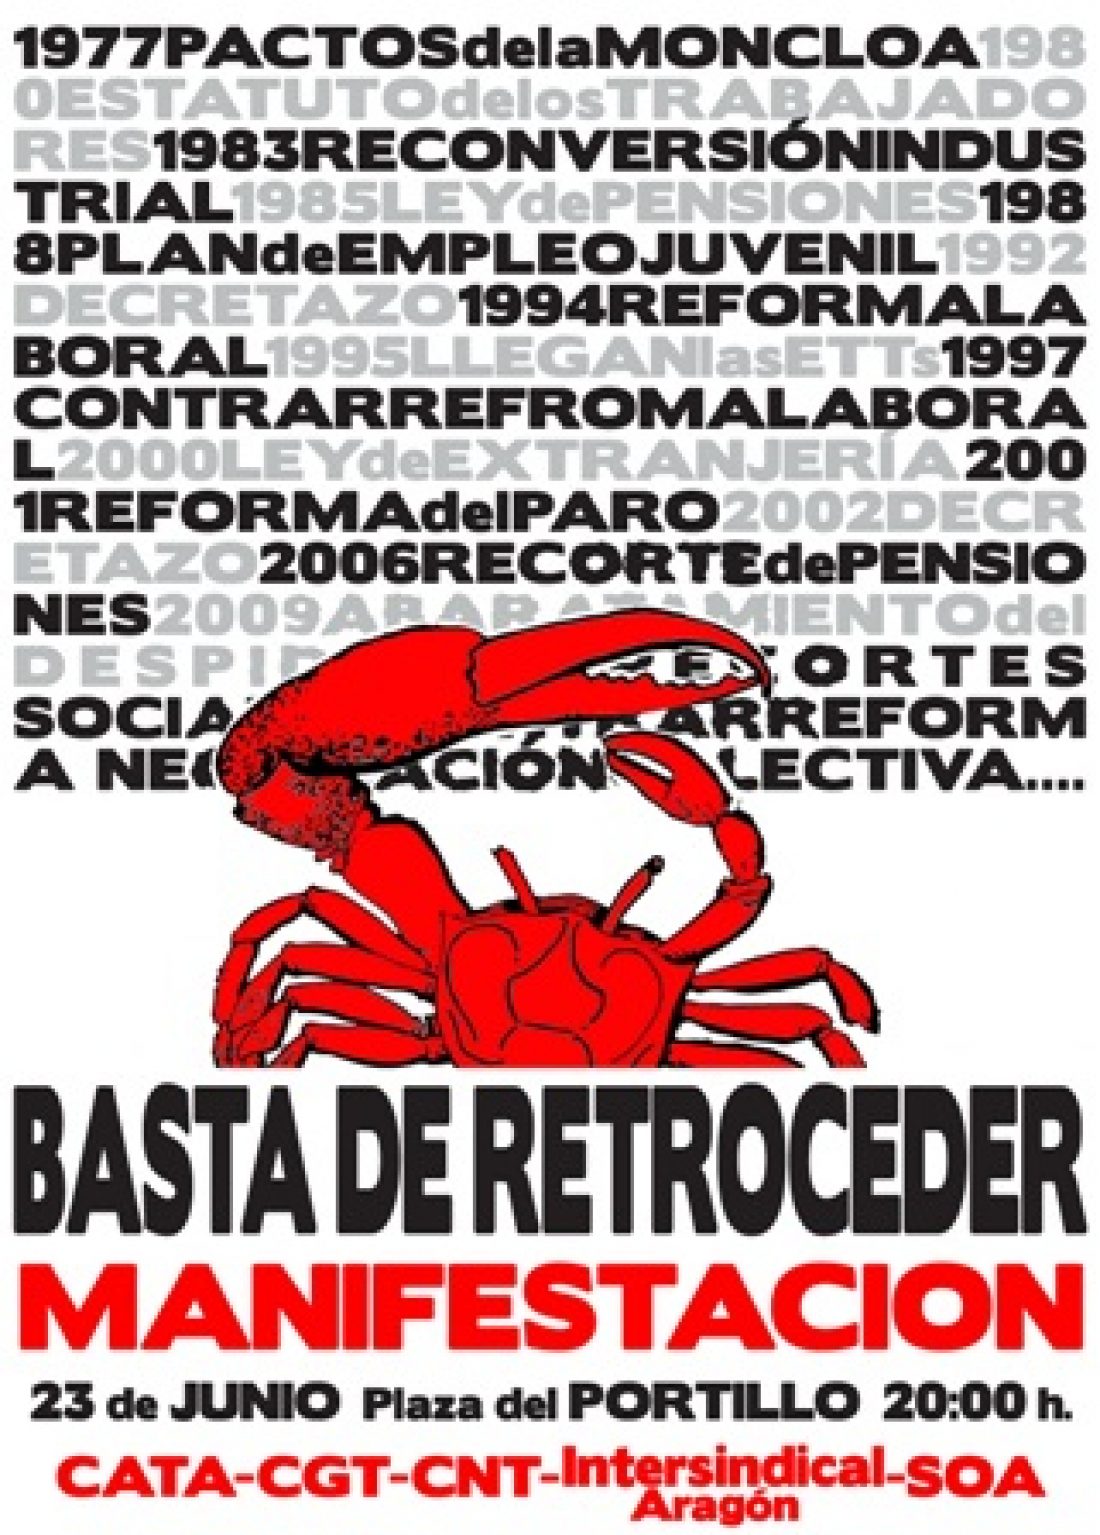 Zaragoza, 23 de junio : Manifestación contra la negociación colectiva